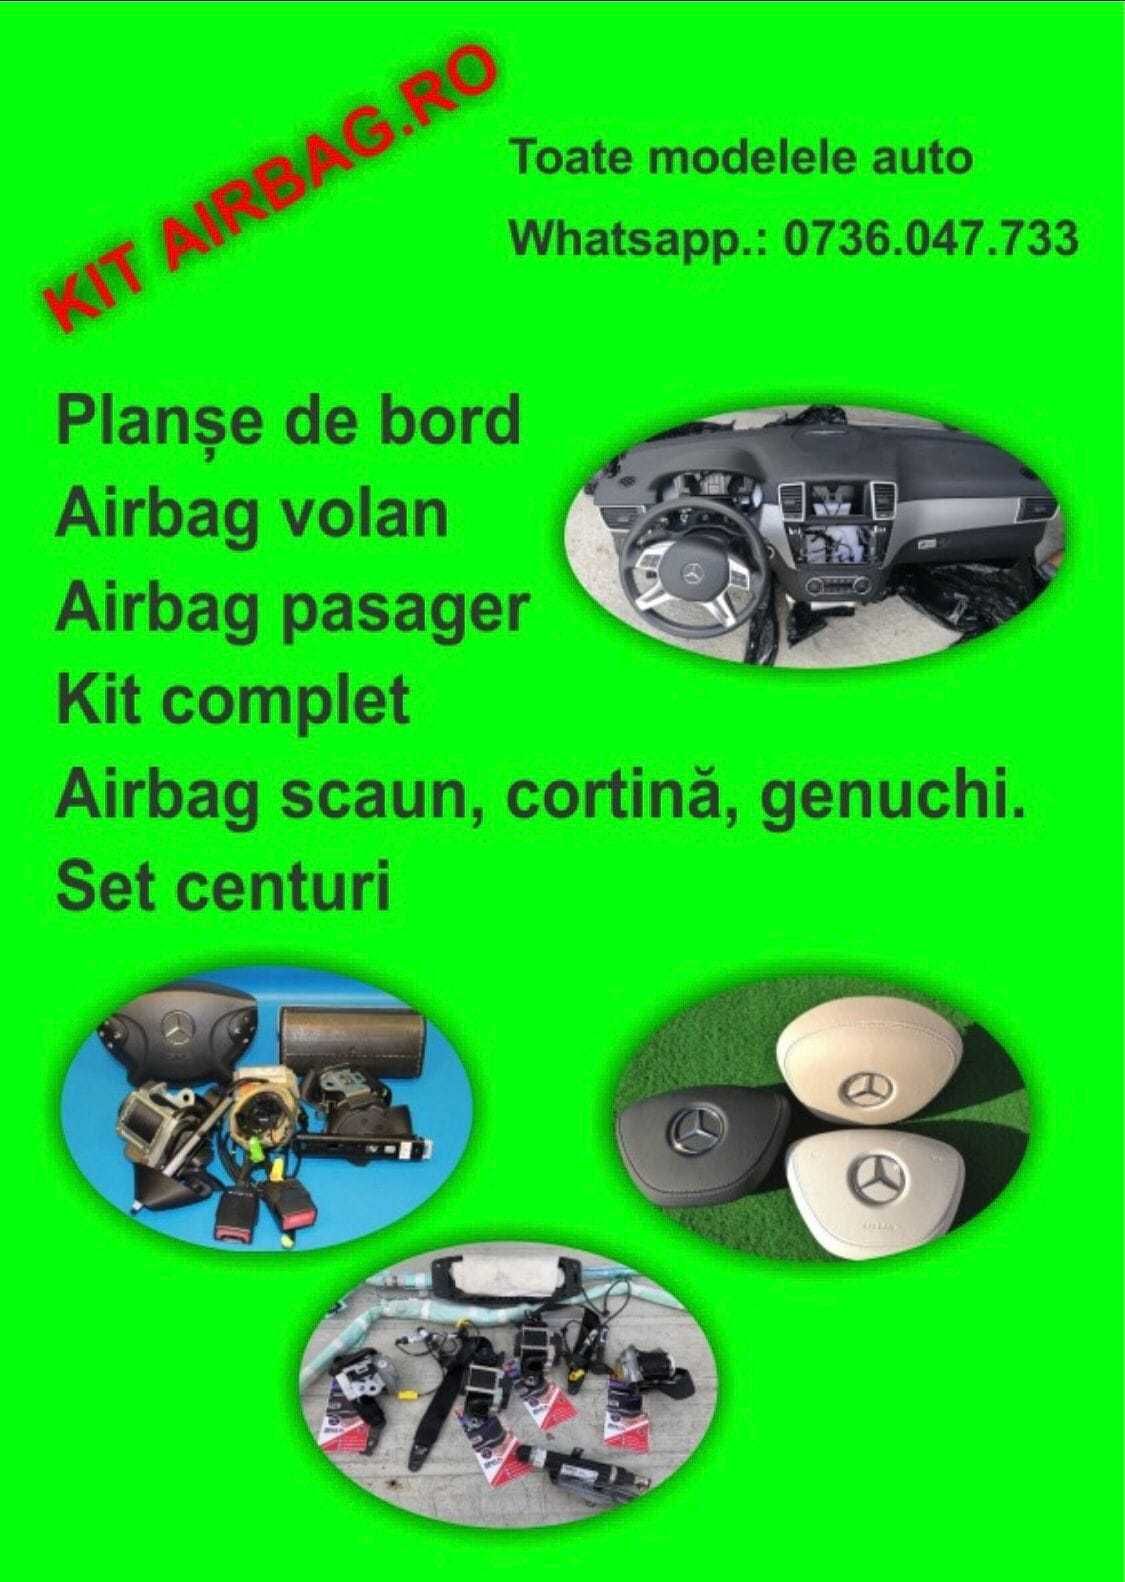 airbag scaun pentru toate modelele AUDI / set centuri / planse de bord